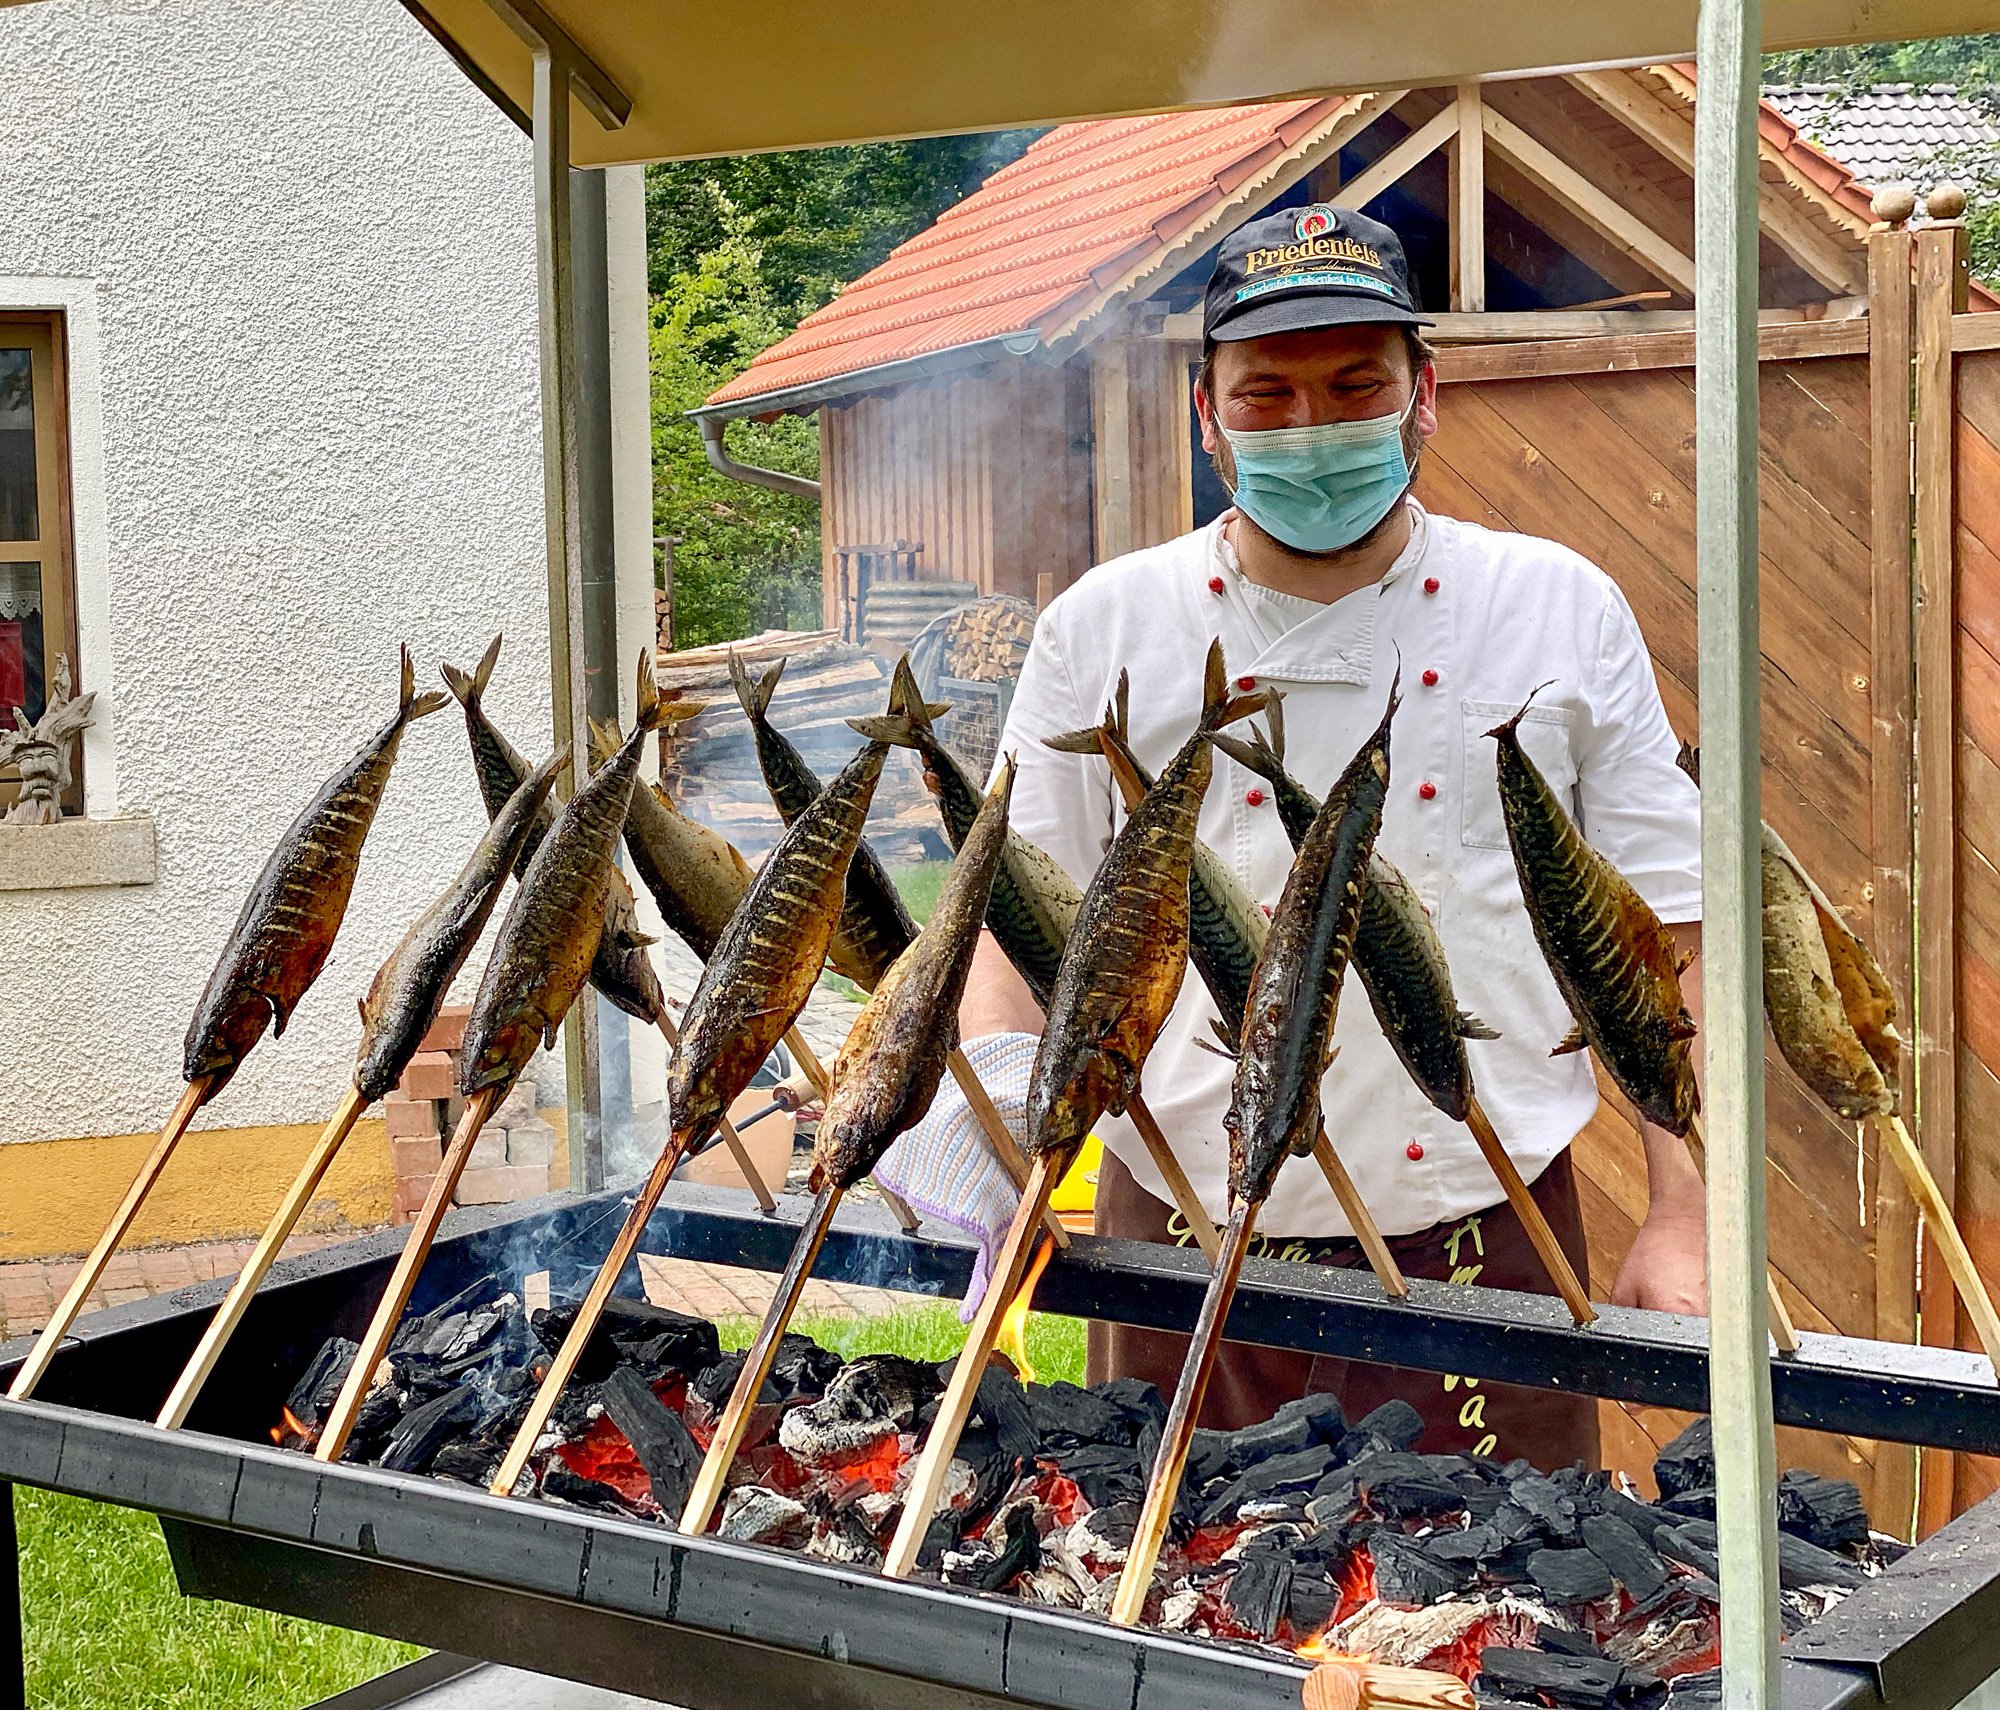 Leckere Makrelen bereitete Andreas Schaumberger auf seinem selbstgebauten Steckerlgrill für seine Gäste zu.